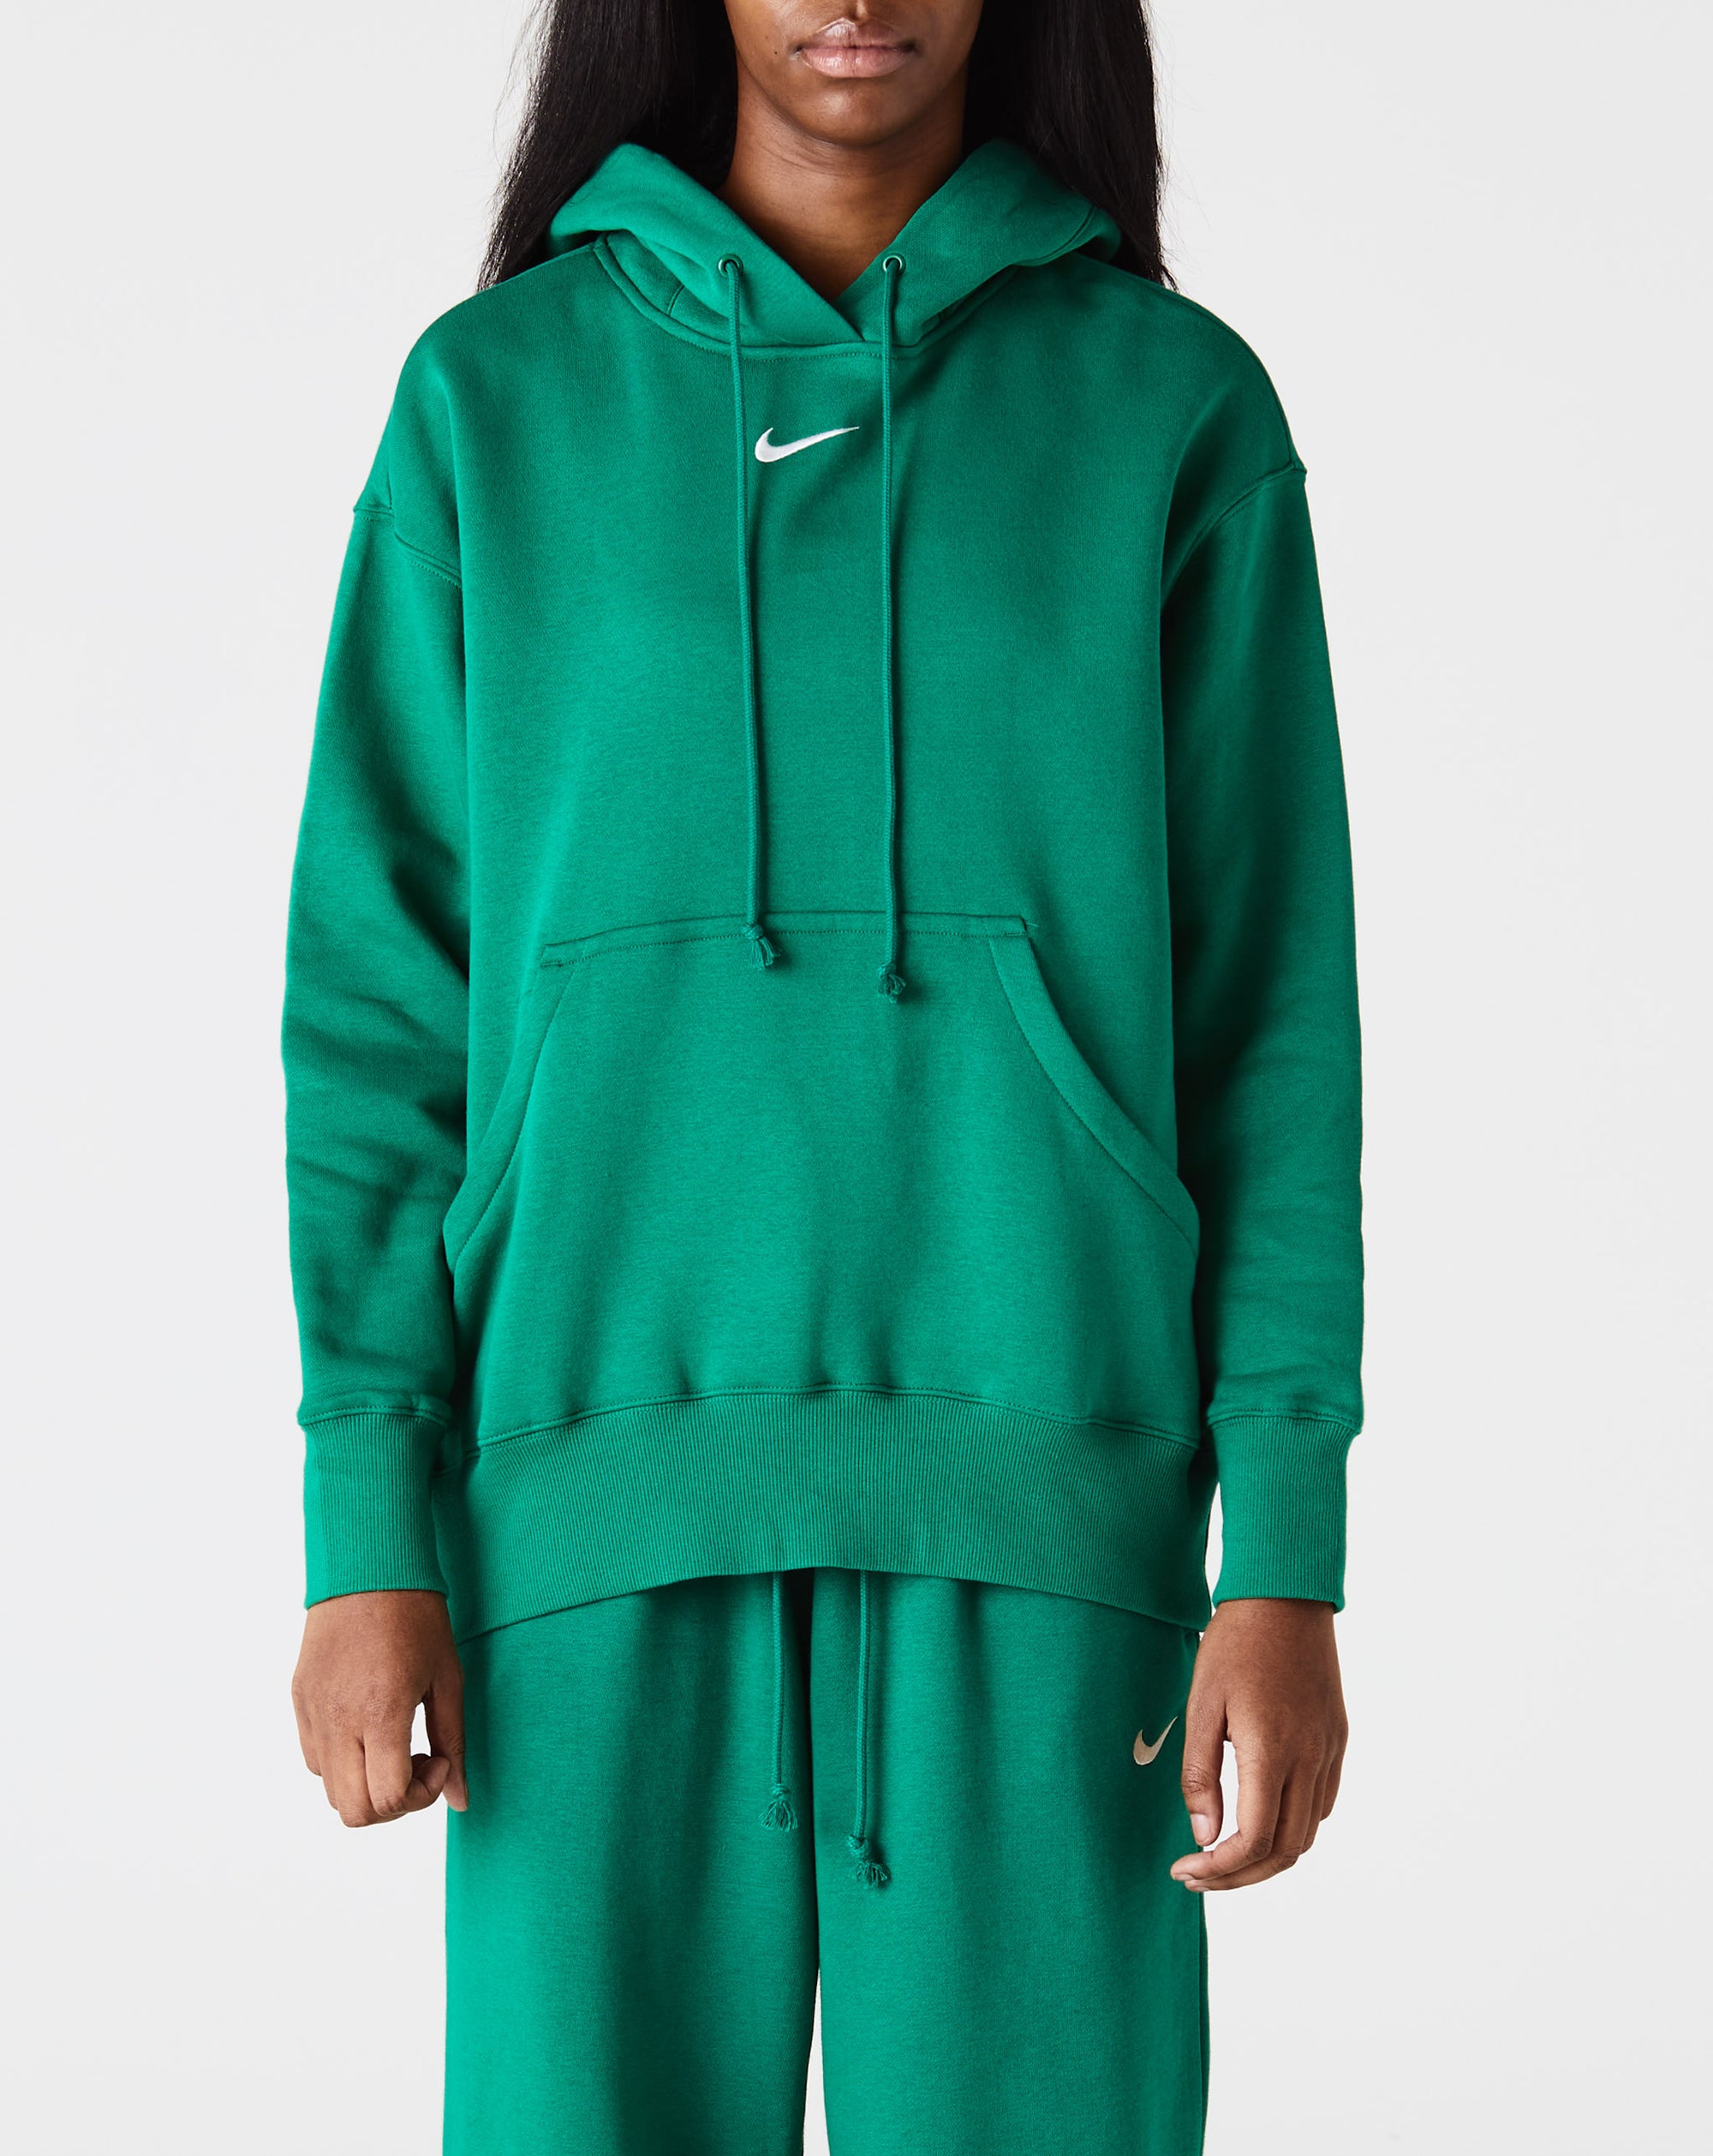 Nike Women's Phoenix Fleece Oversized Pullover Hoodie - Rule of Next Apparel